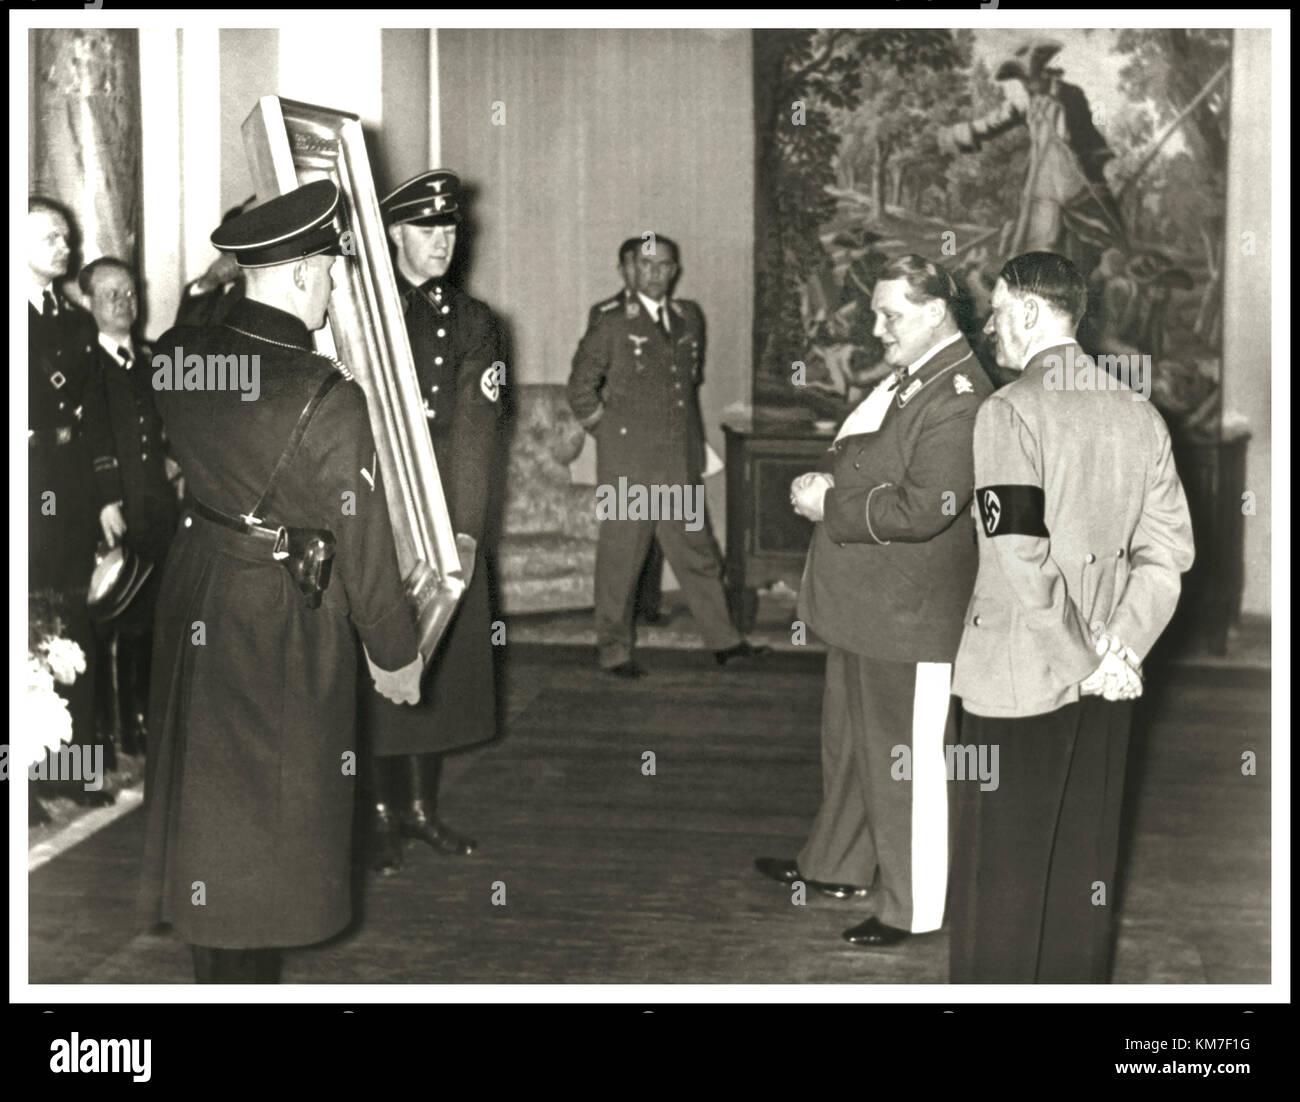 VINTAGE NAZI GÖRING GEBURTSTAG HITLER Deutsche Feldmarschall Hermann Göring präsentiert mit einem Gemälde "falconer" an seinem 45. Geburtstag, die er von von Adolf Hitler benannt Stockfoto